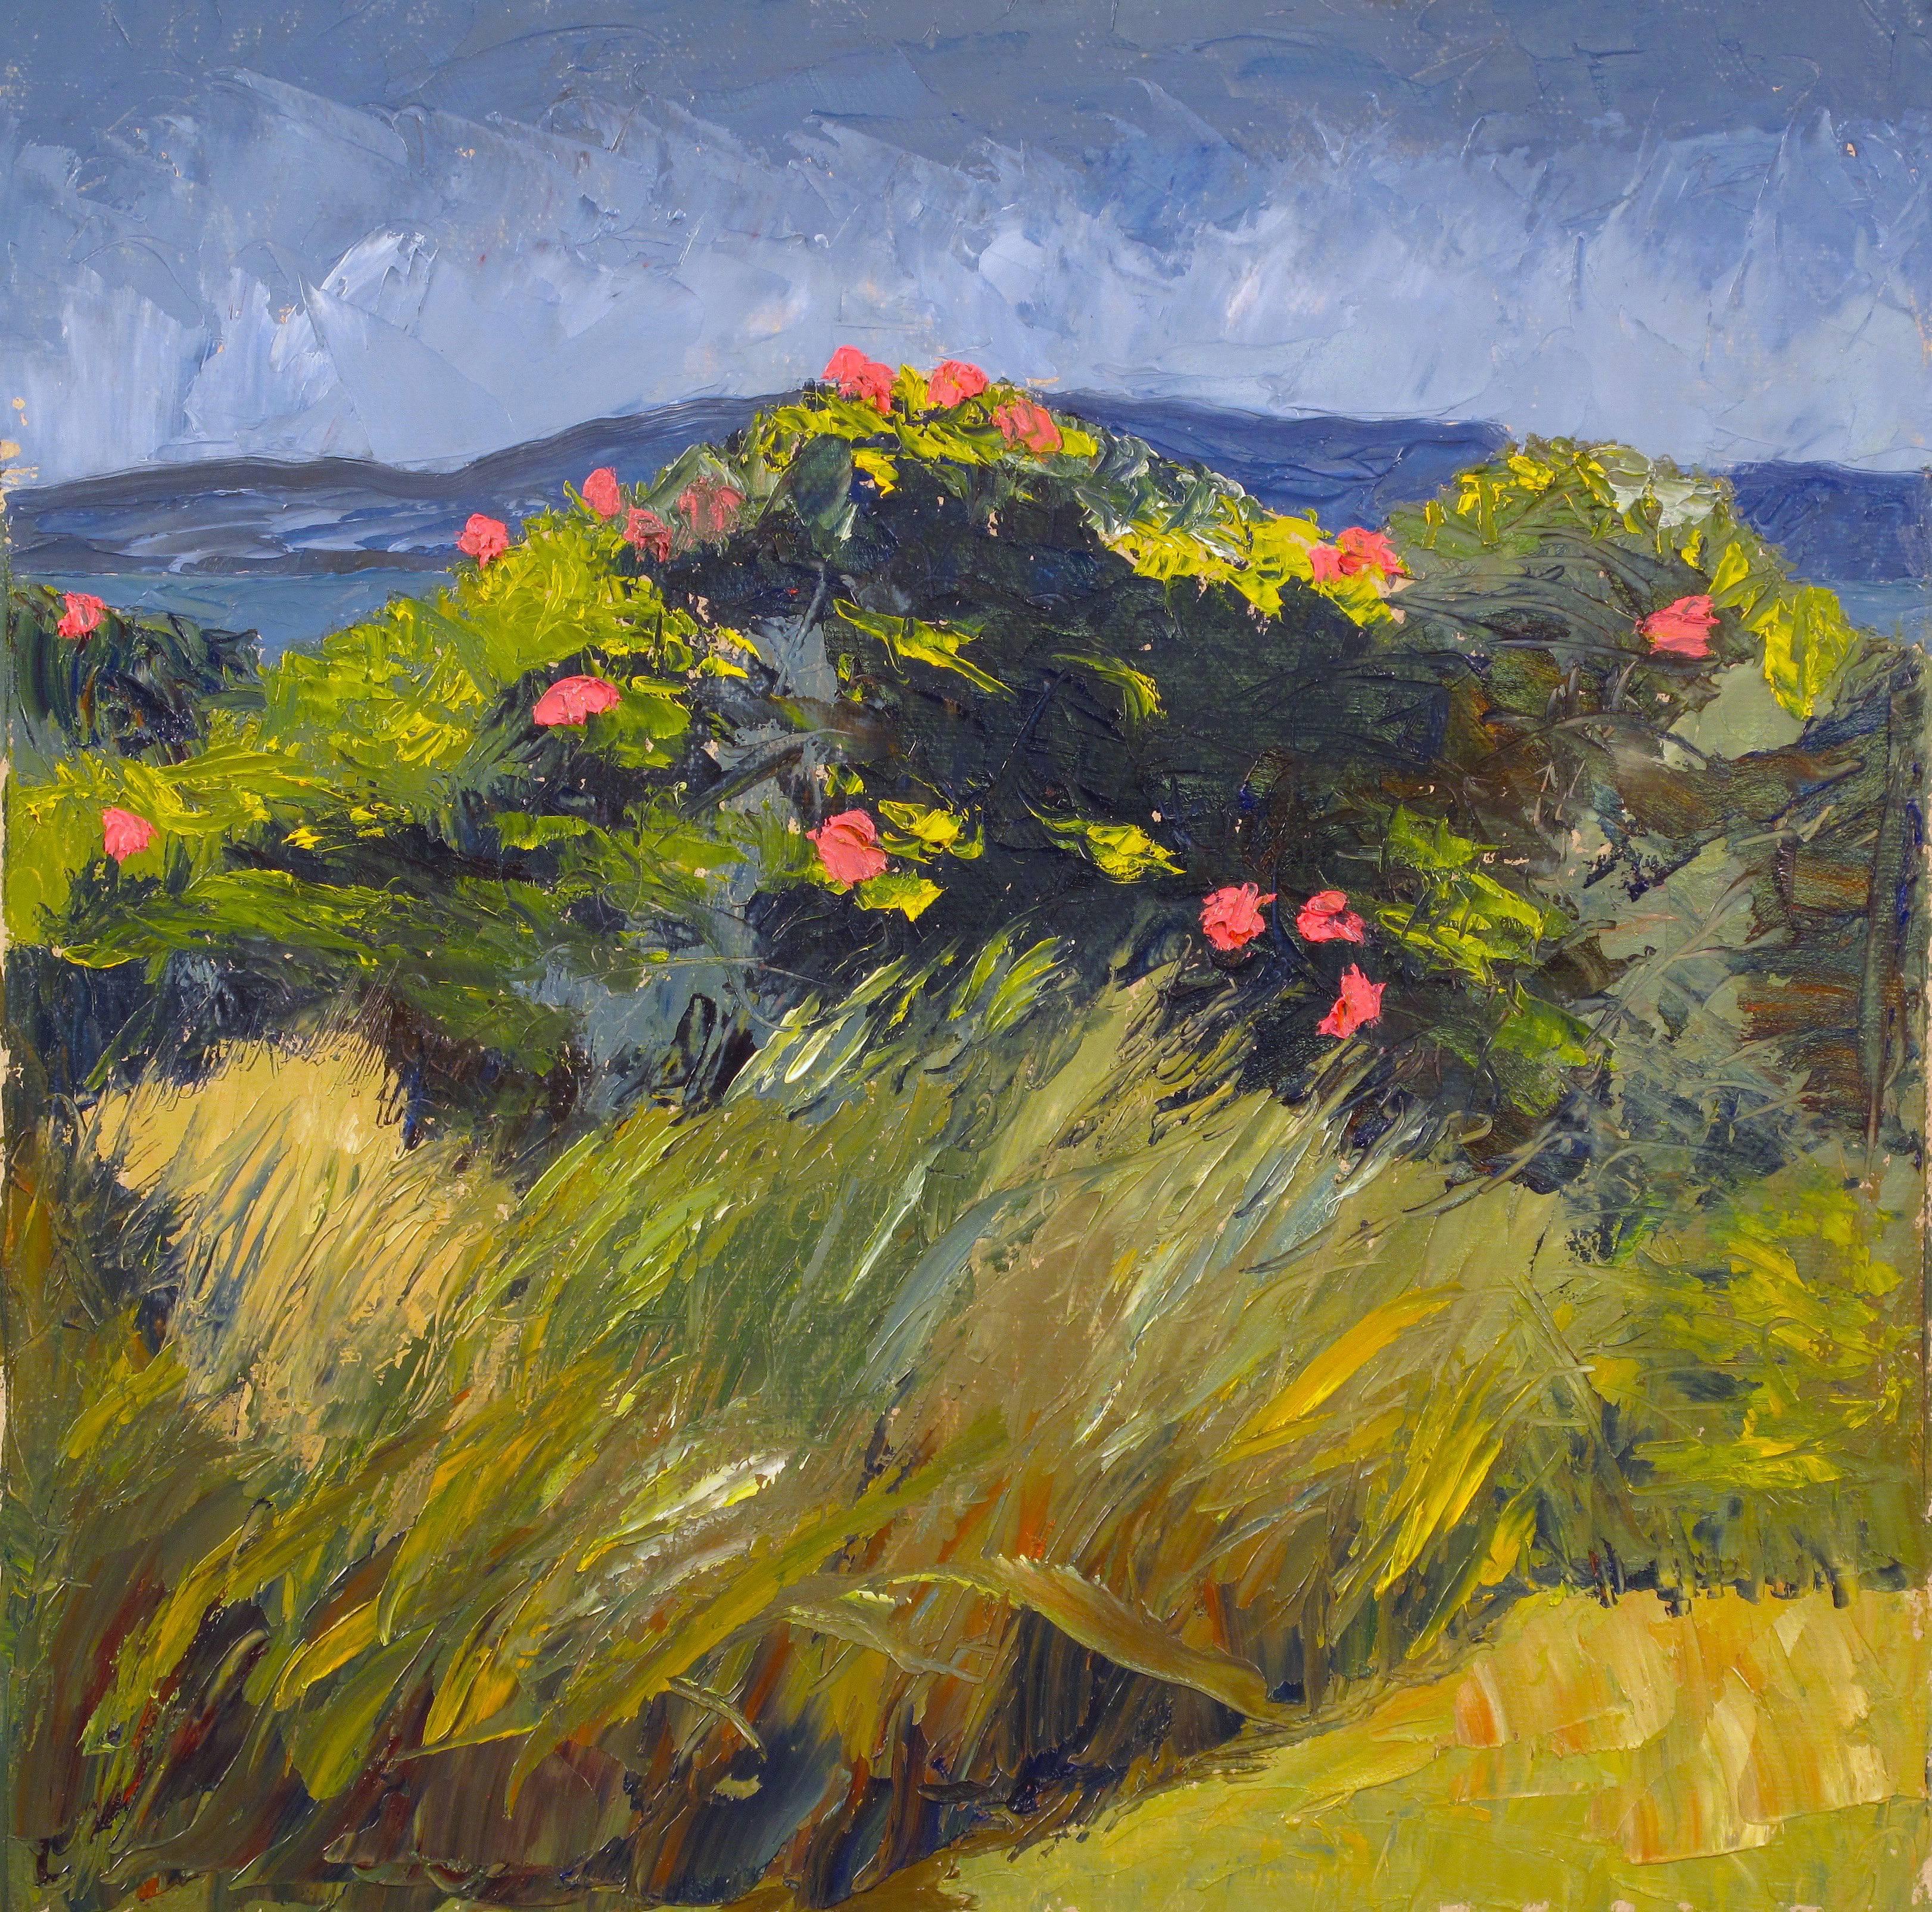 "Roses dans la dune" peinture contemporaine en plein air de l'impressionniste américain. 